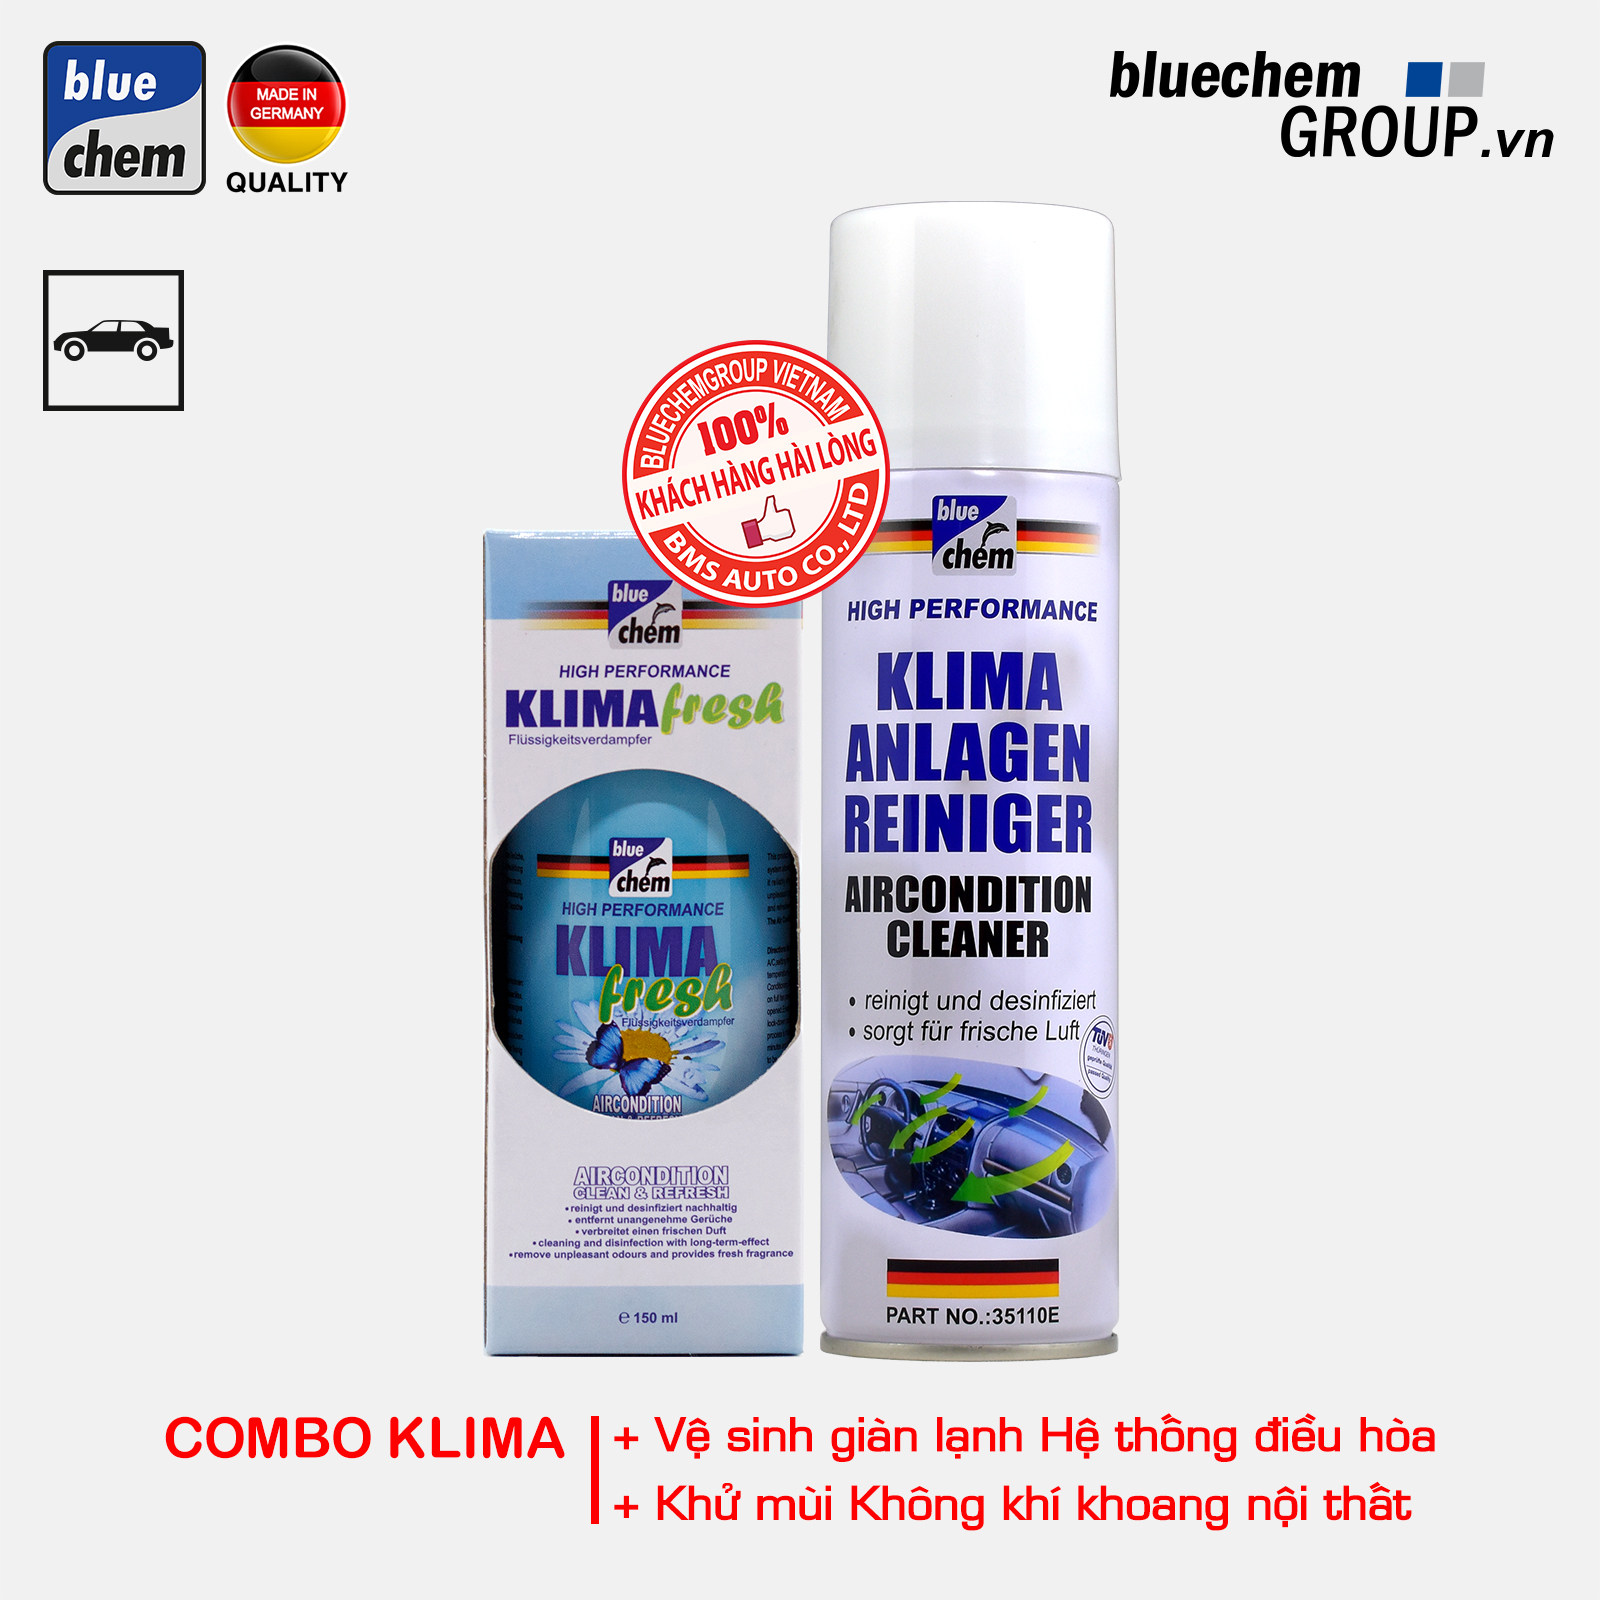 Combo bluechem Vệ sinh giàn lạnh điều hòa và Khử mùi không khí khoang nội thất Ô tô (Combo Klima)